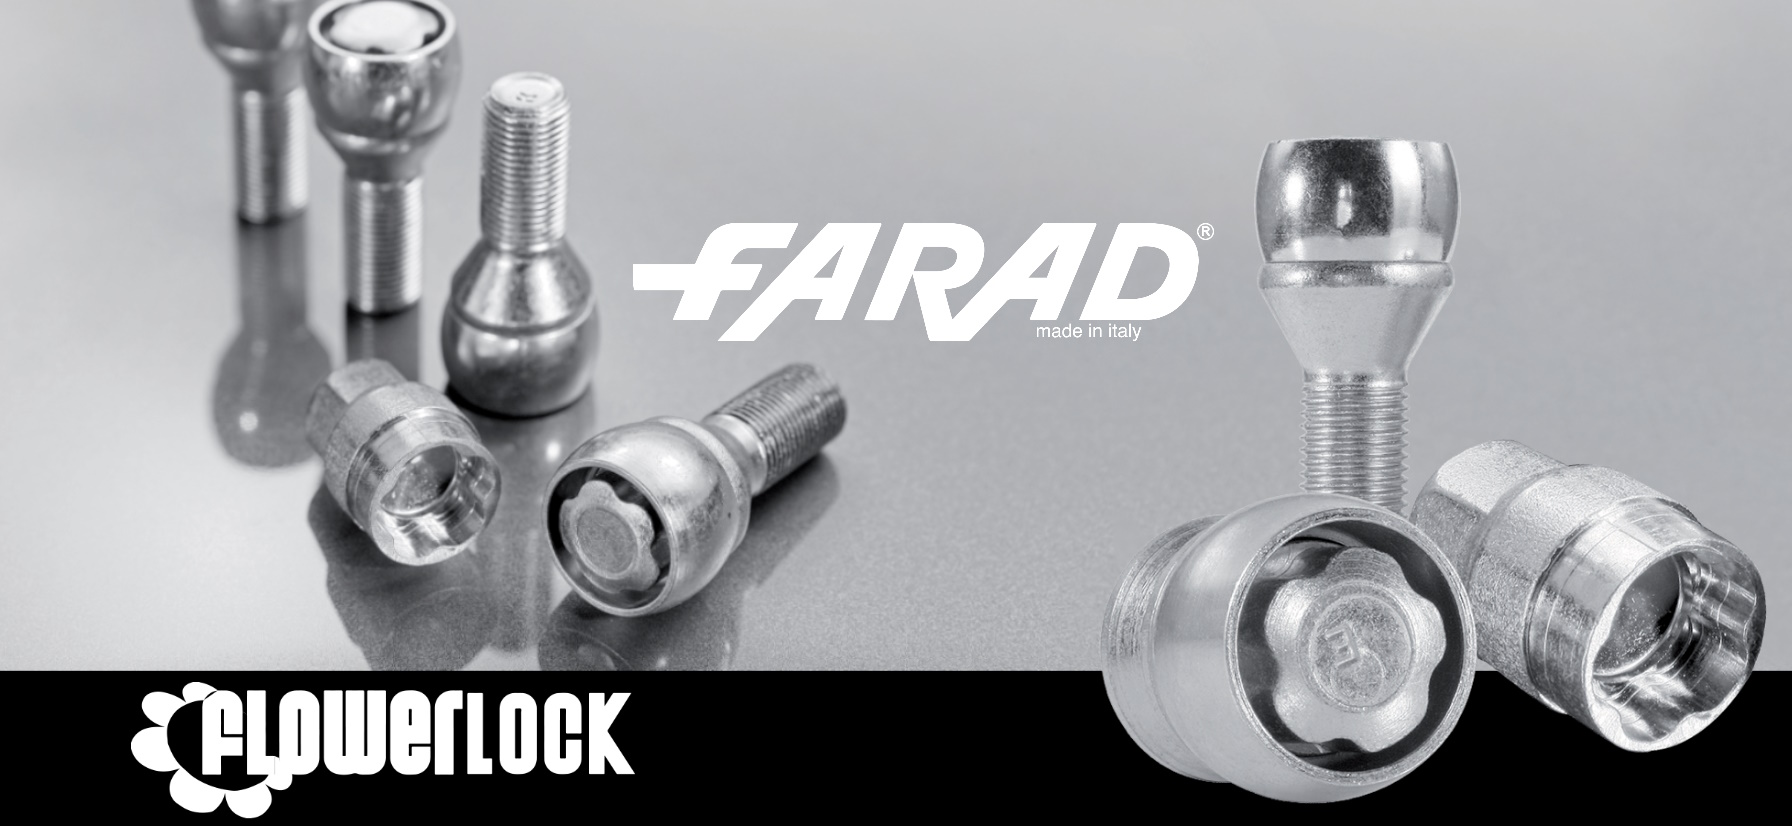 Farad FlowerLock M12x1.5x24mm